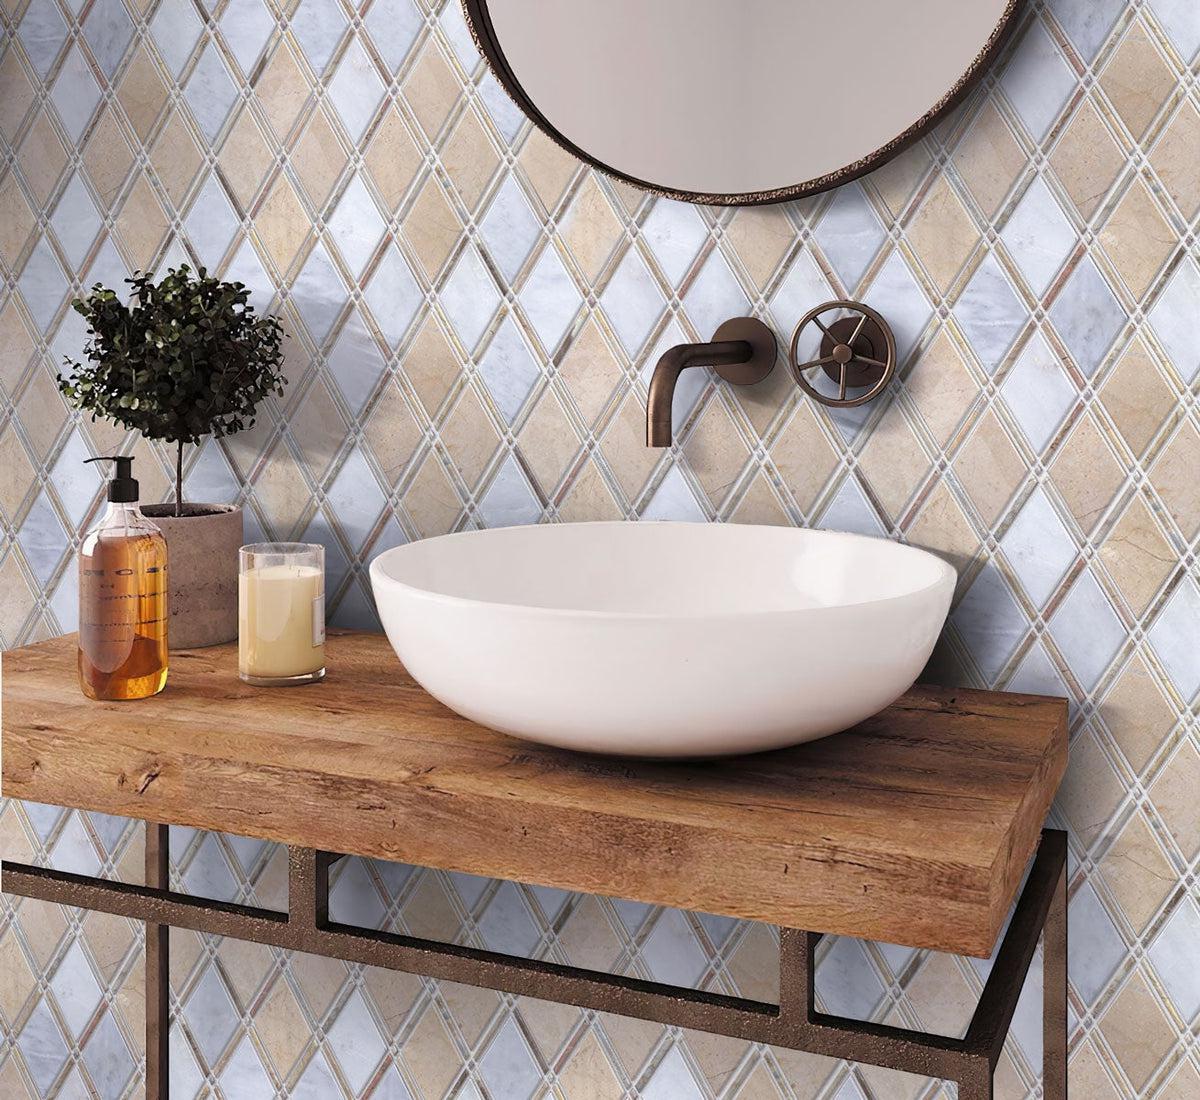 Crema Marfil And Carrara Diamond Marble Mosaic Tile bathroom backsplash